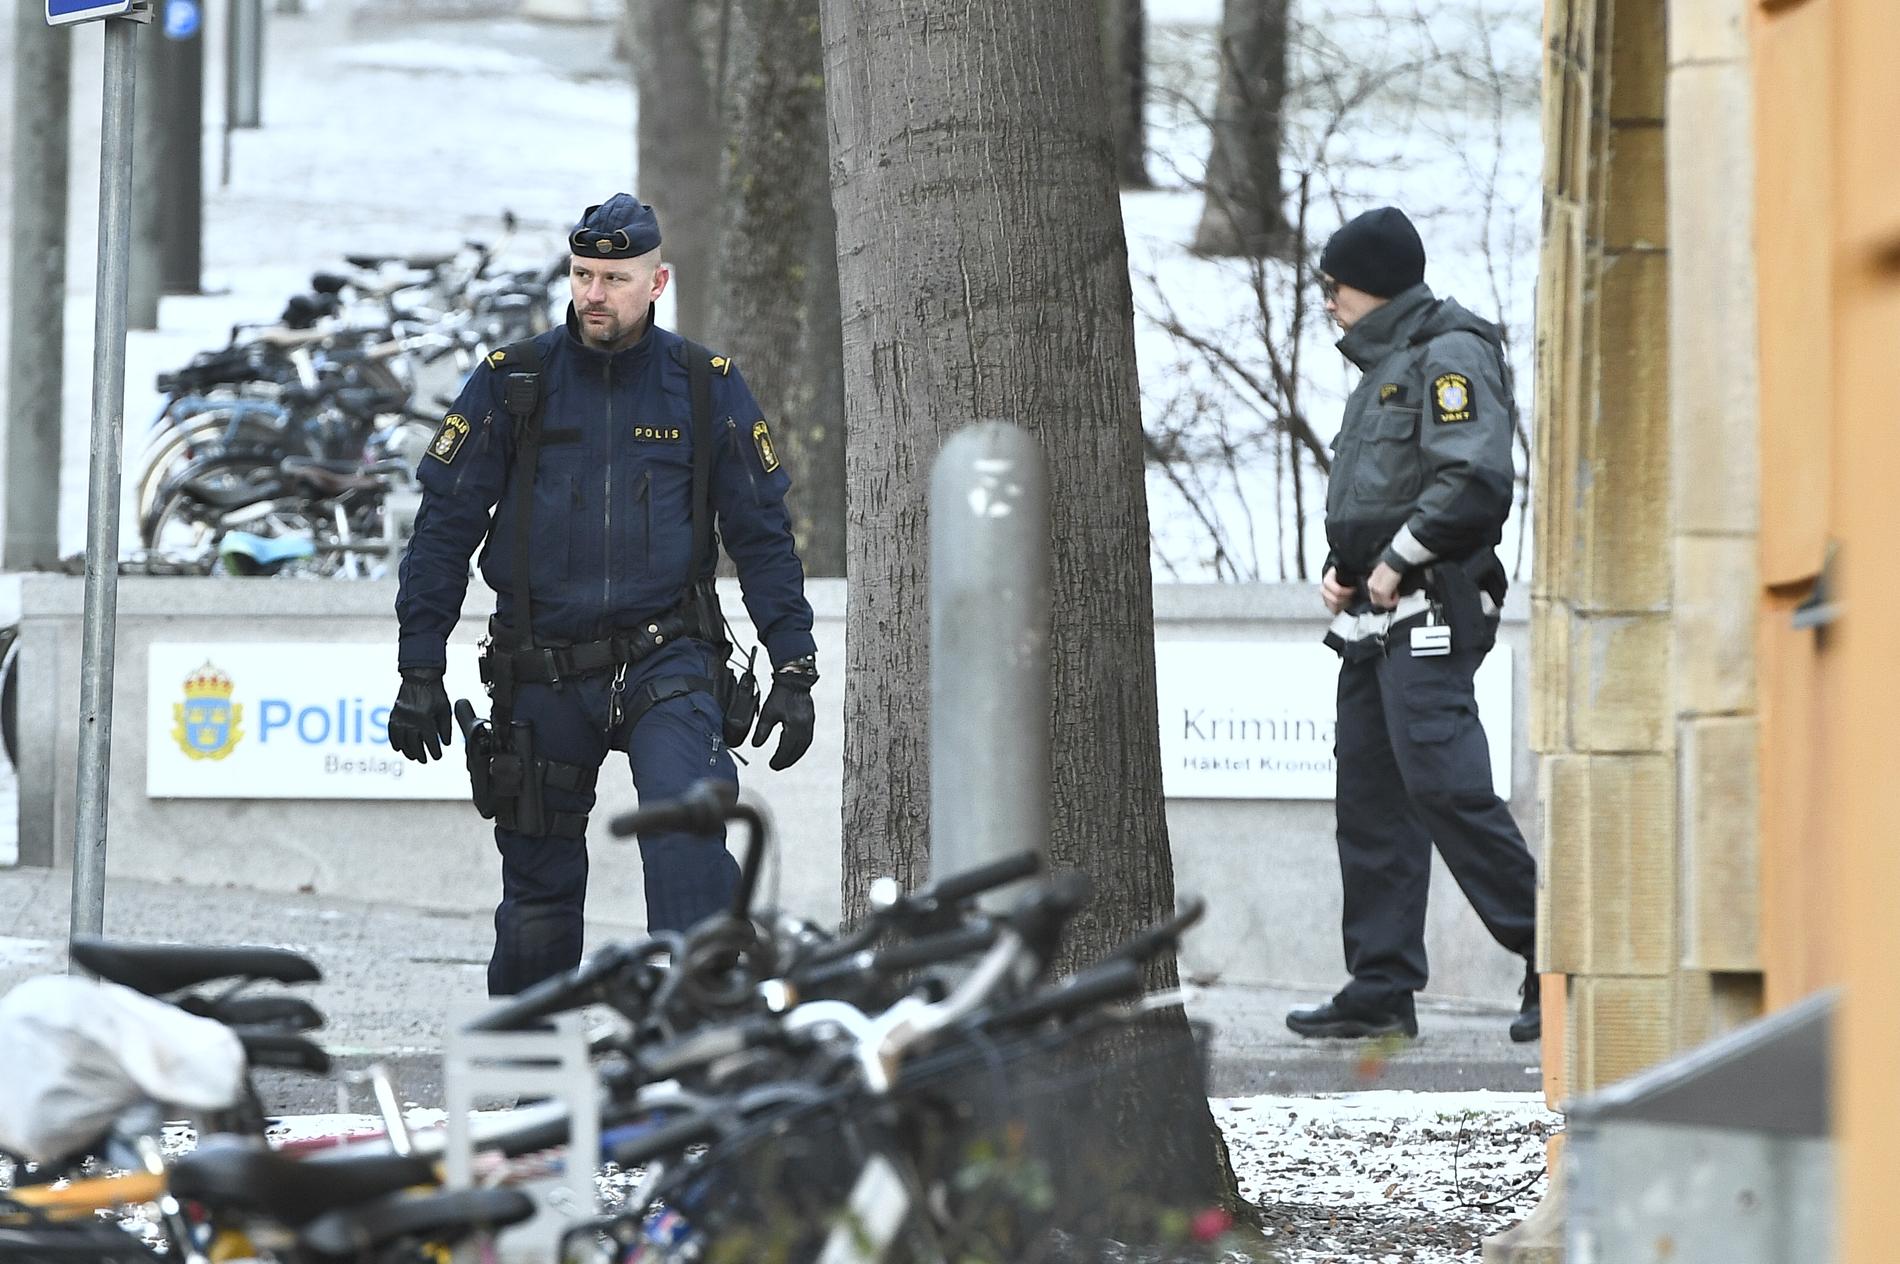 Kronobergshäktet i Stockholm spärrades av på grund av ett misstänkt föremål.